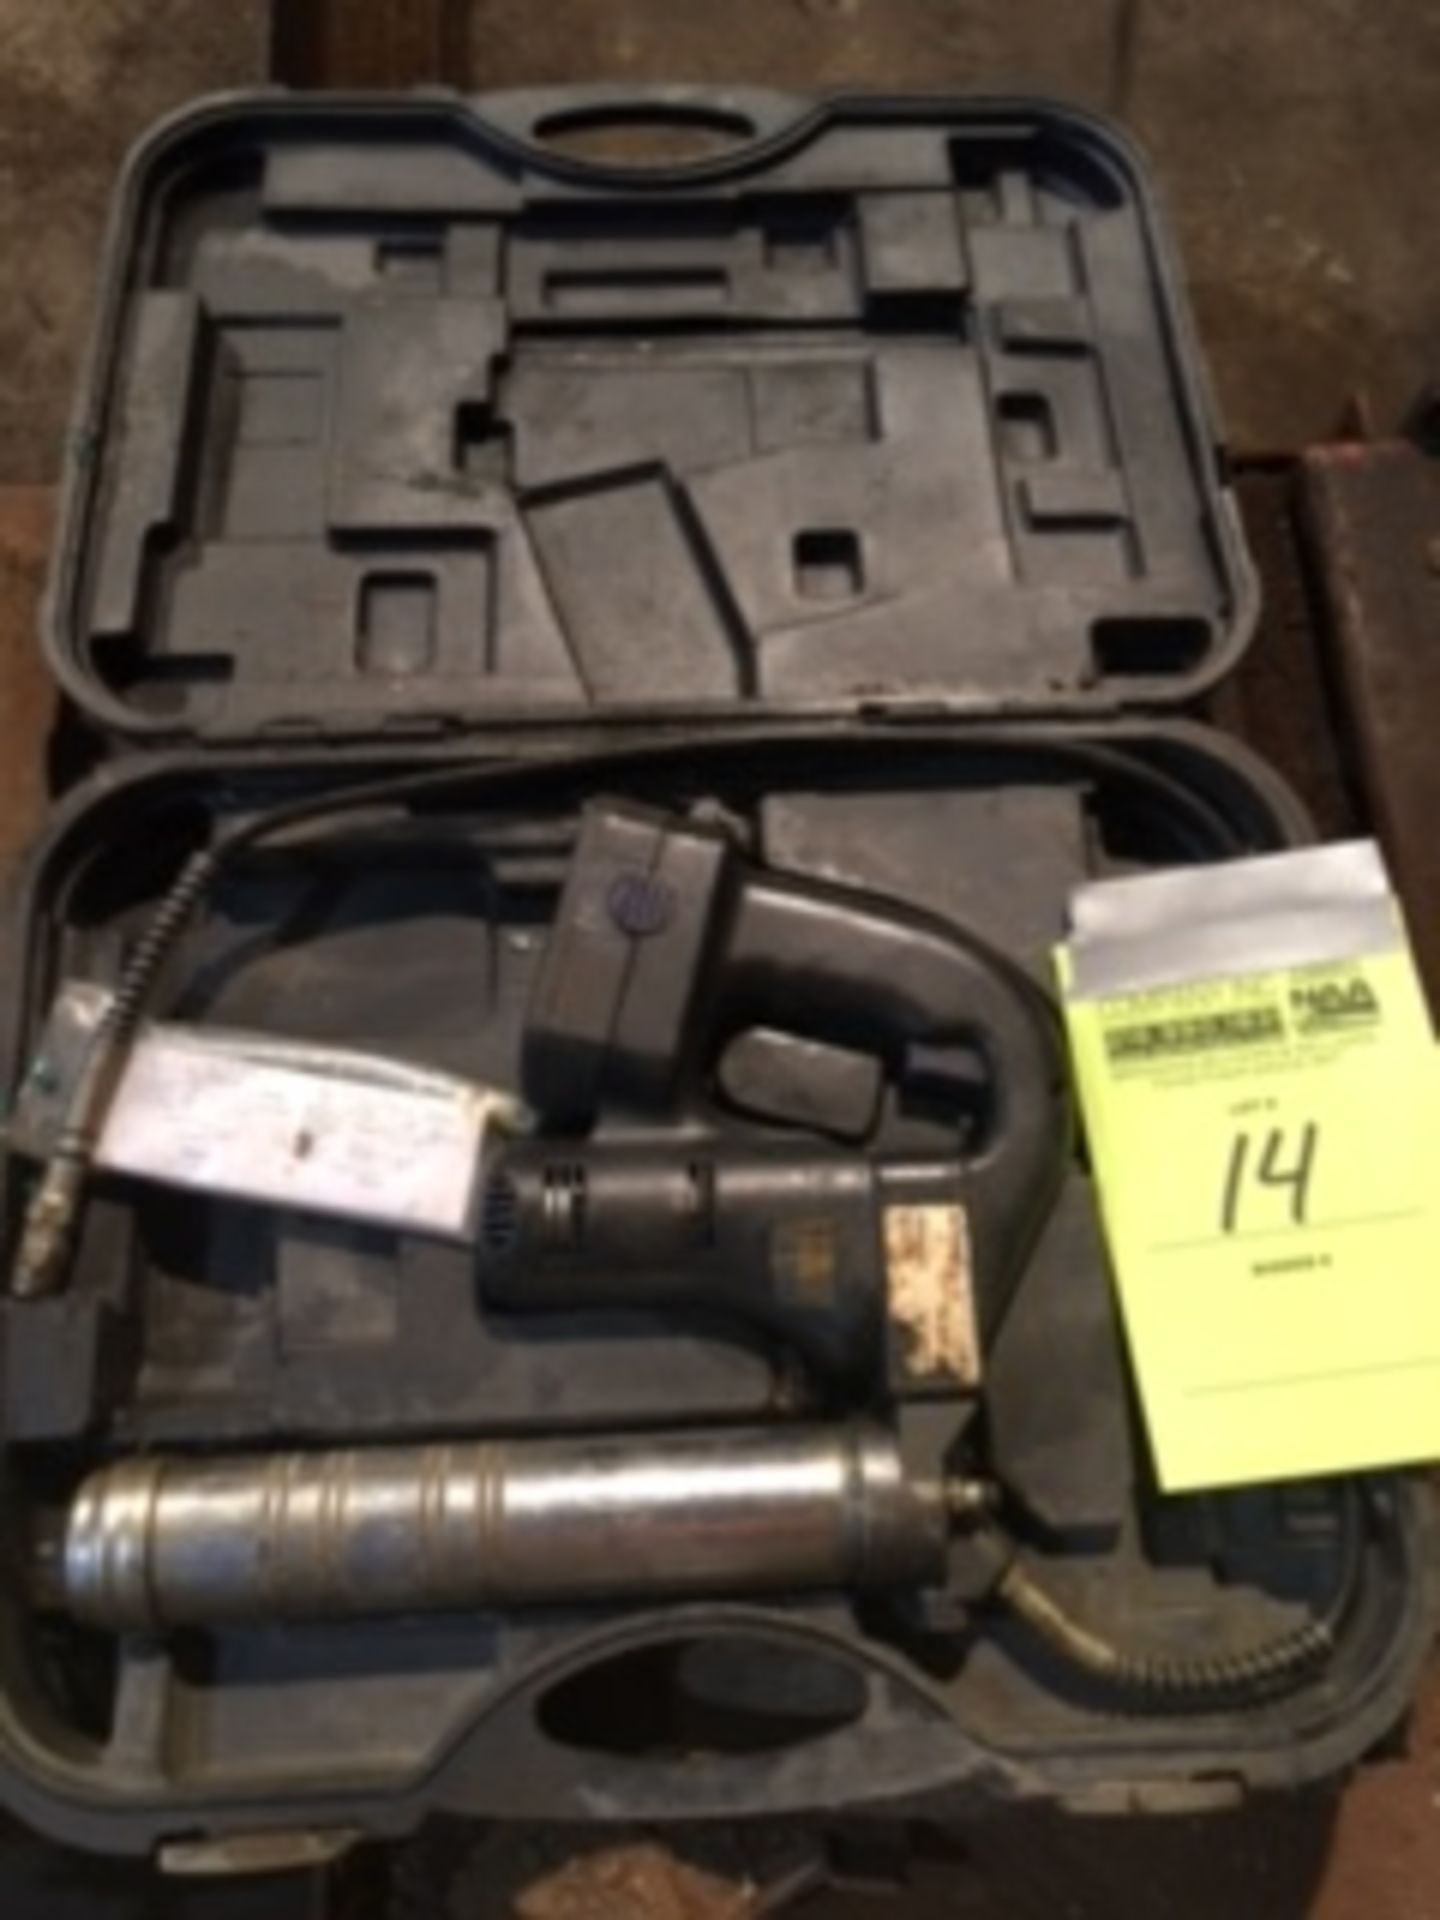 OEM 87106, 18v grease gun. No charger. 1 battery, serial 060310